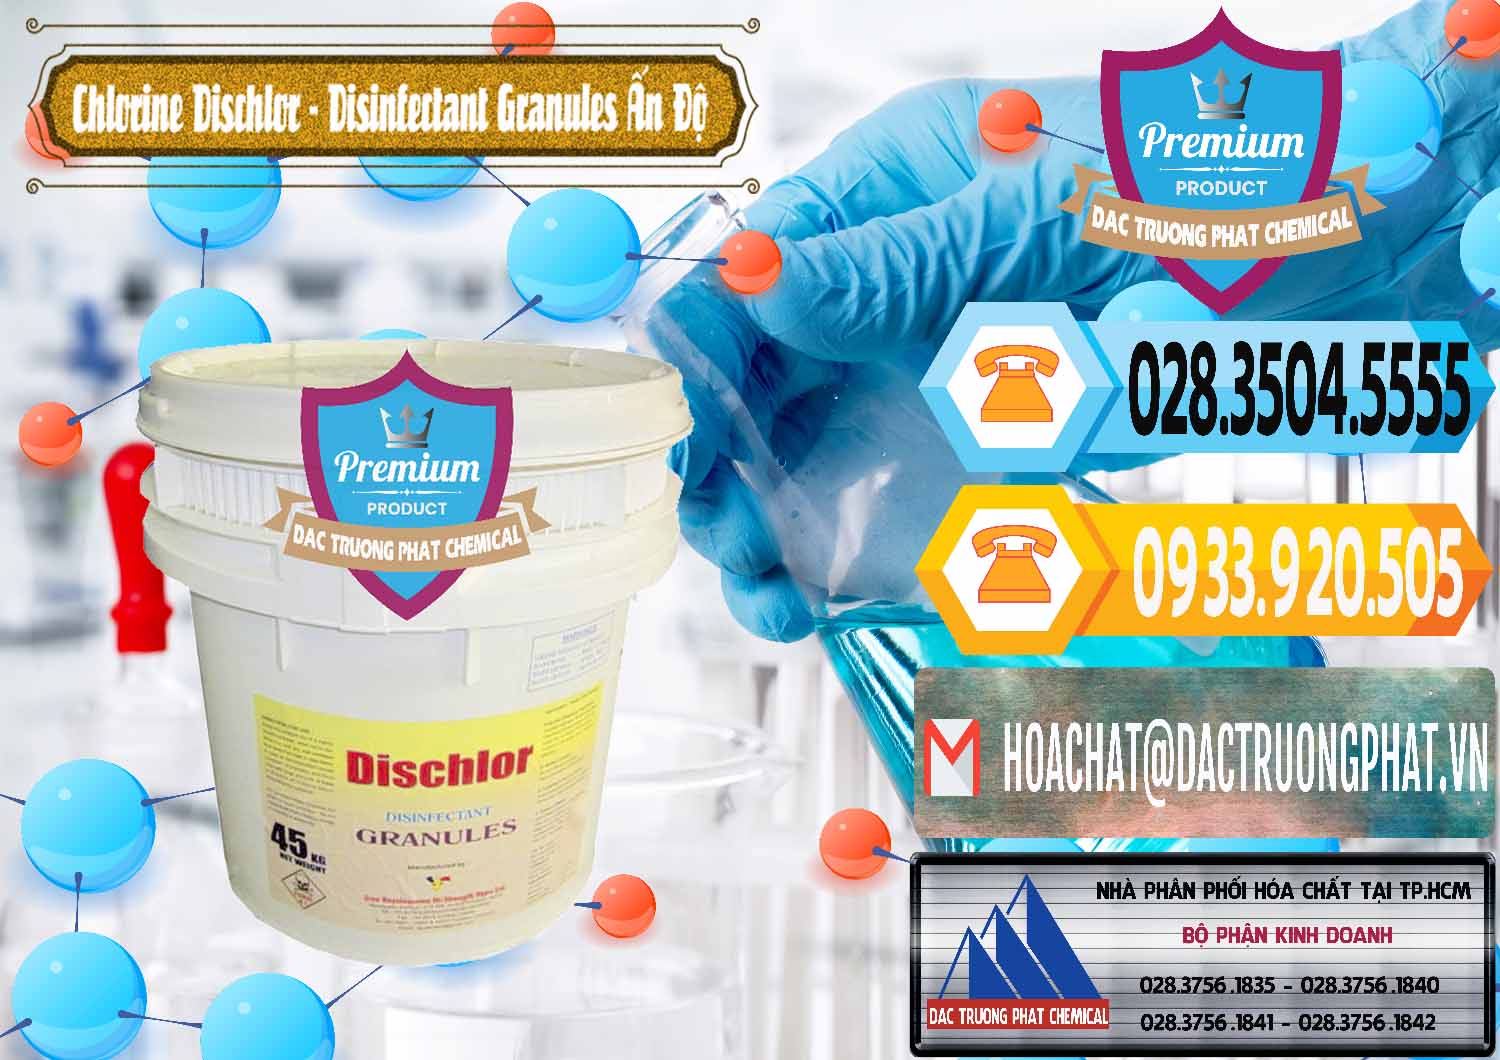 Công ty chuyên bán & cung cấp Chlorine – Clorin 70% Dischlor - Disinfectant Granules Ấn Độ India - 0248 - Cty chuyên nhập khẩu và cung cấp hóa chất tại TP.HCM - hoachattayrua.net